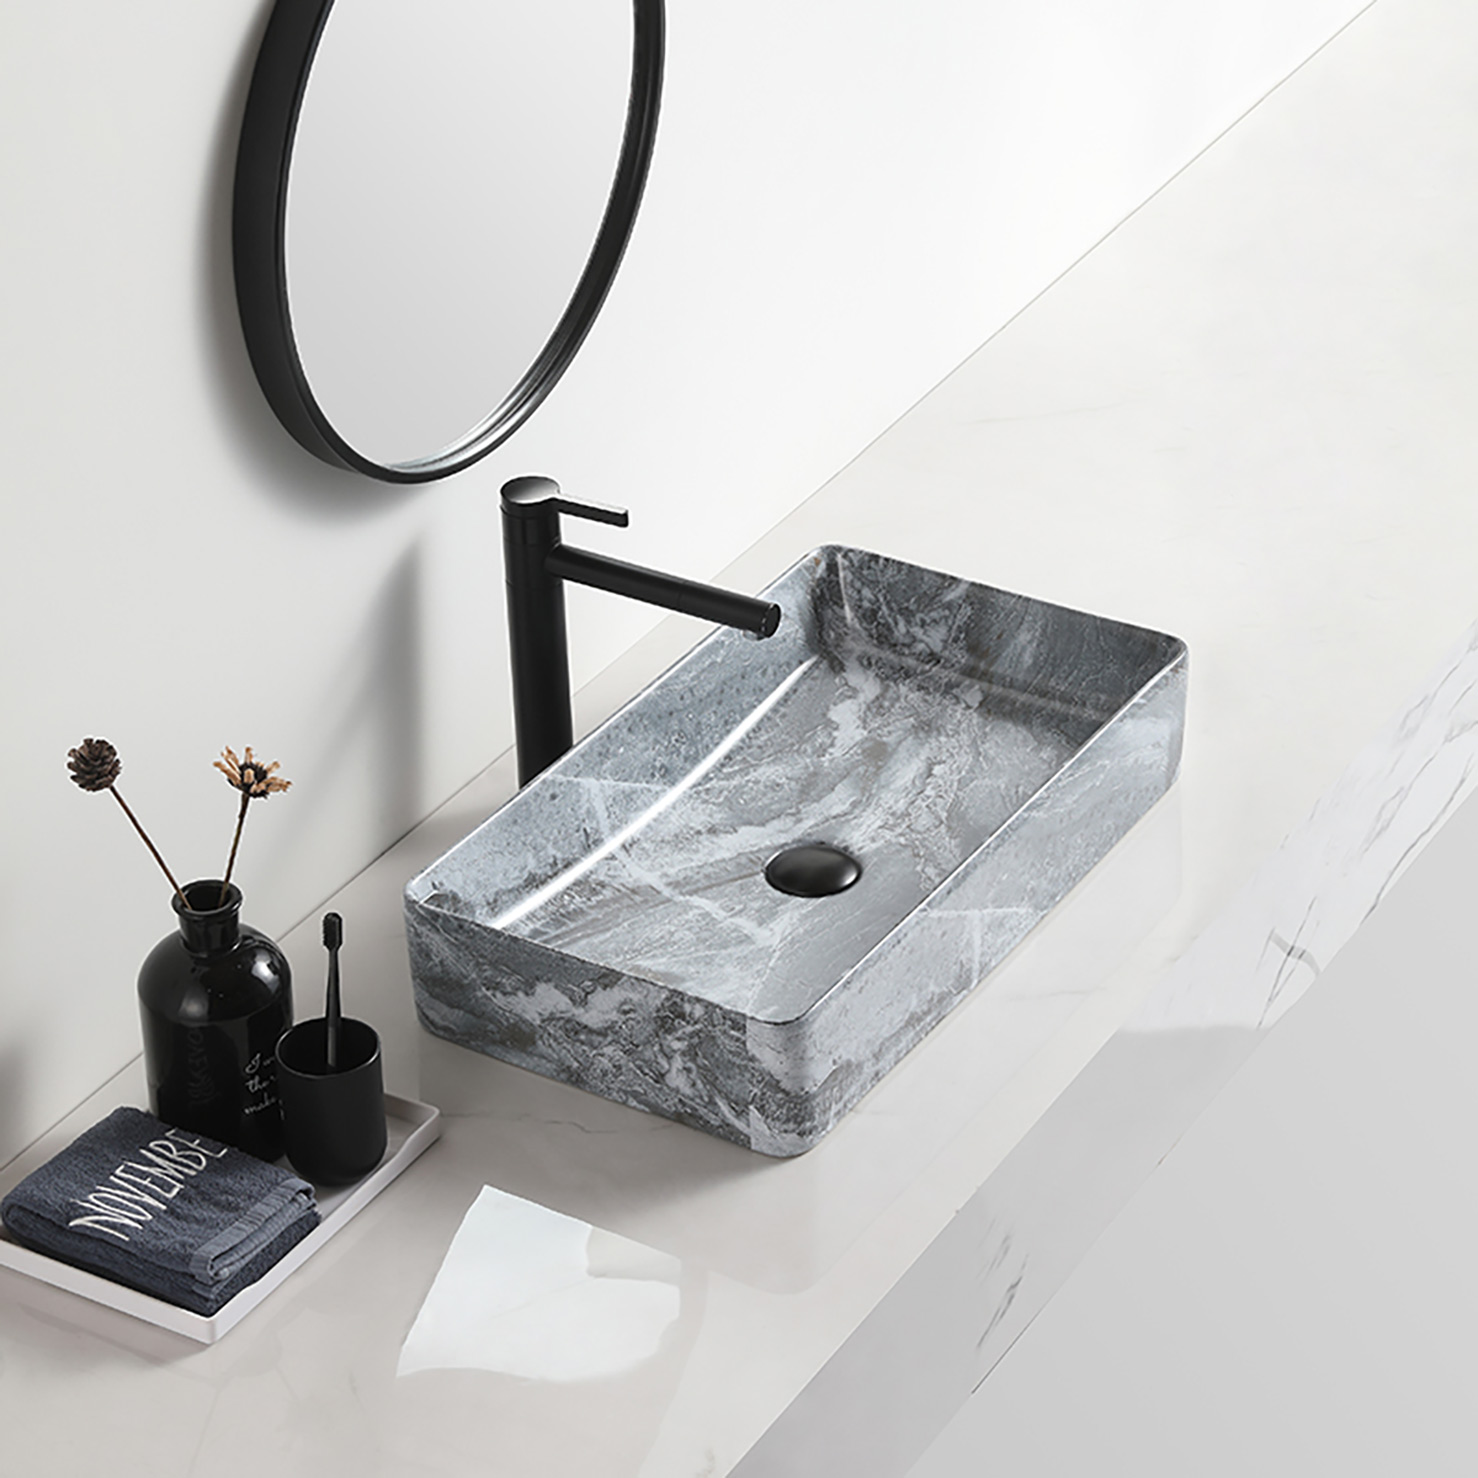 כיור אמבטיה שחור אלגנטי דקורטיבי Lavabo salle bain מאט קרמיקה כיור כיור שולחן שיש אמנות מלון (11)